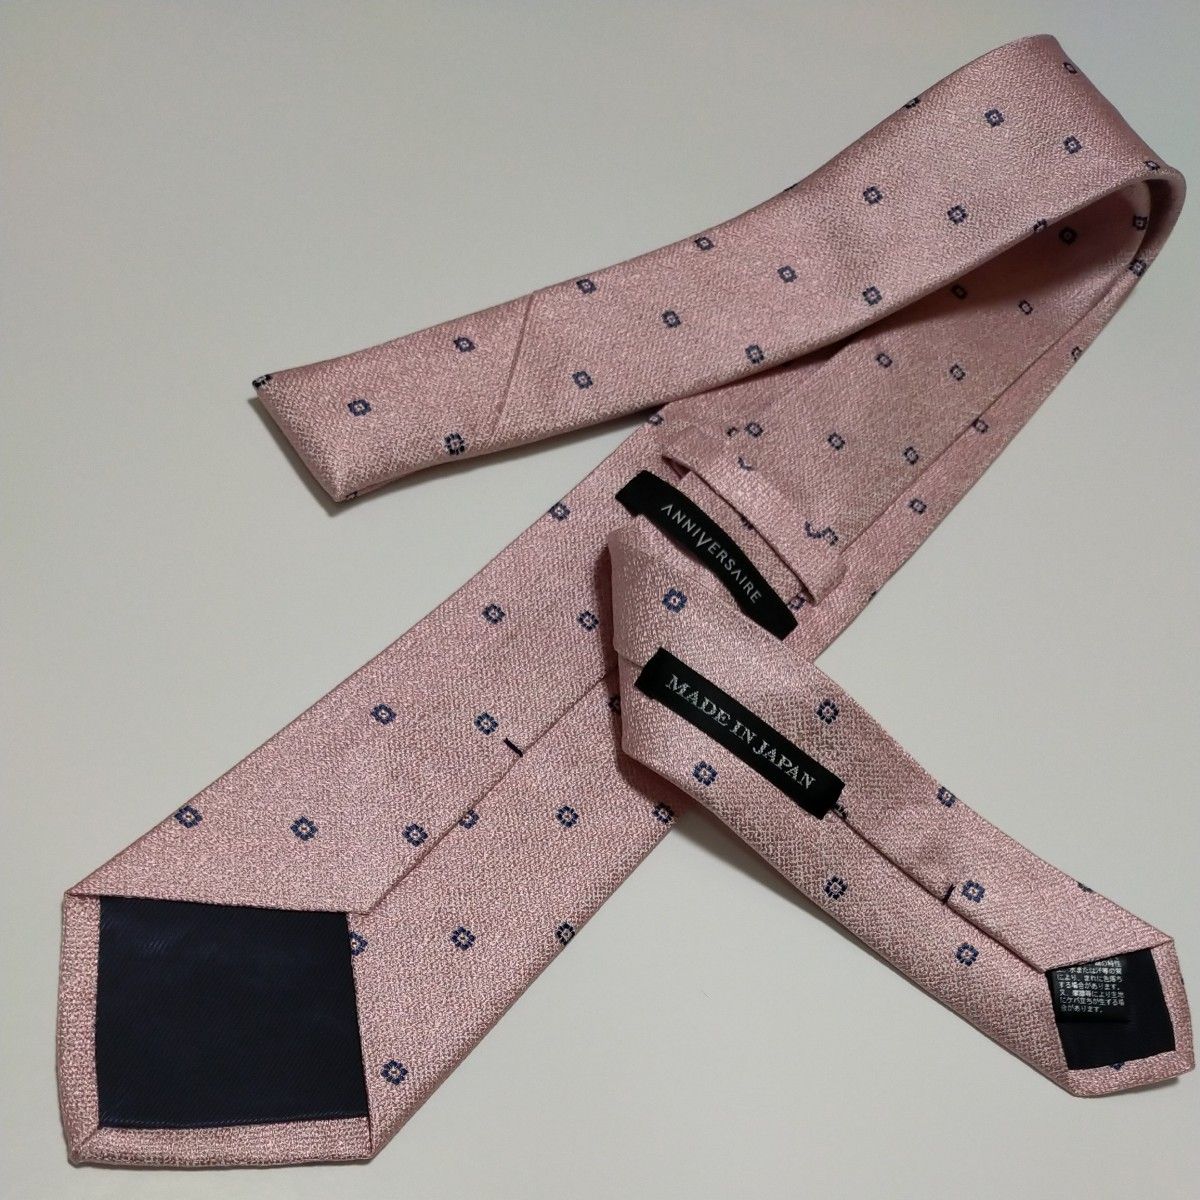  新品ブランドネクタイ 超お買い得品！高品質ネクタイ 日本製 シルク100% 超特価！タグ付き  さくら色